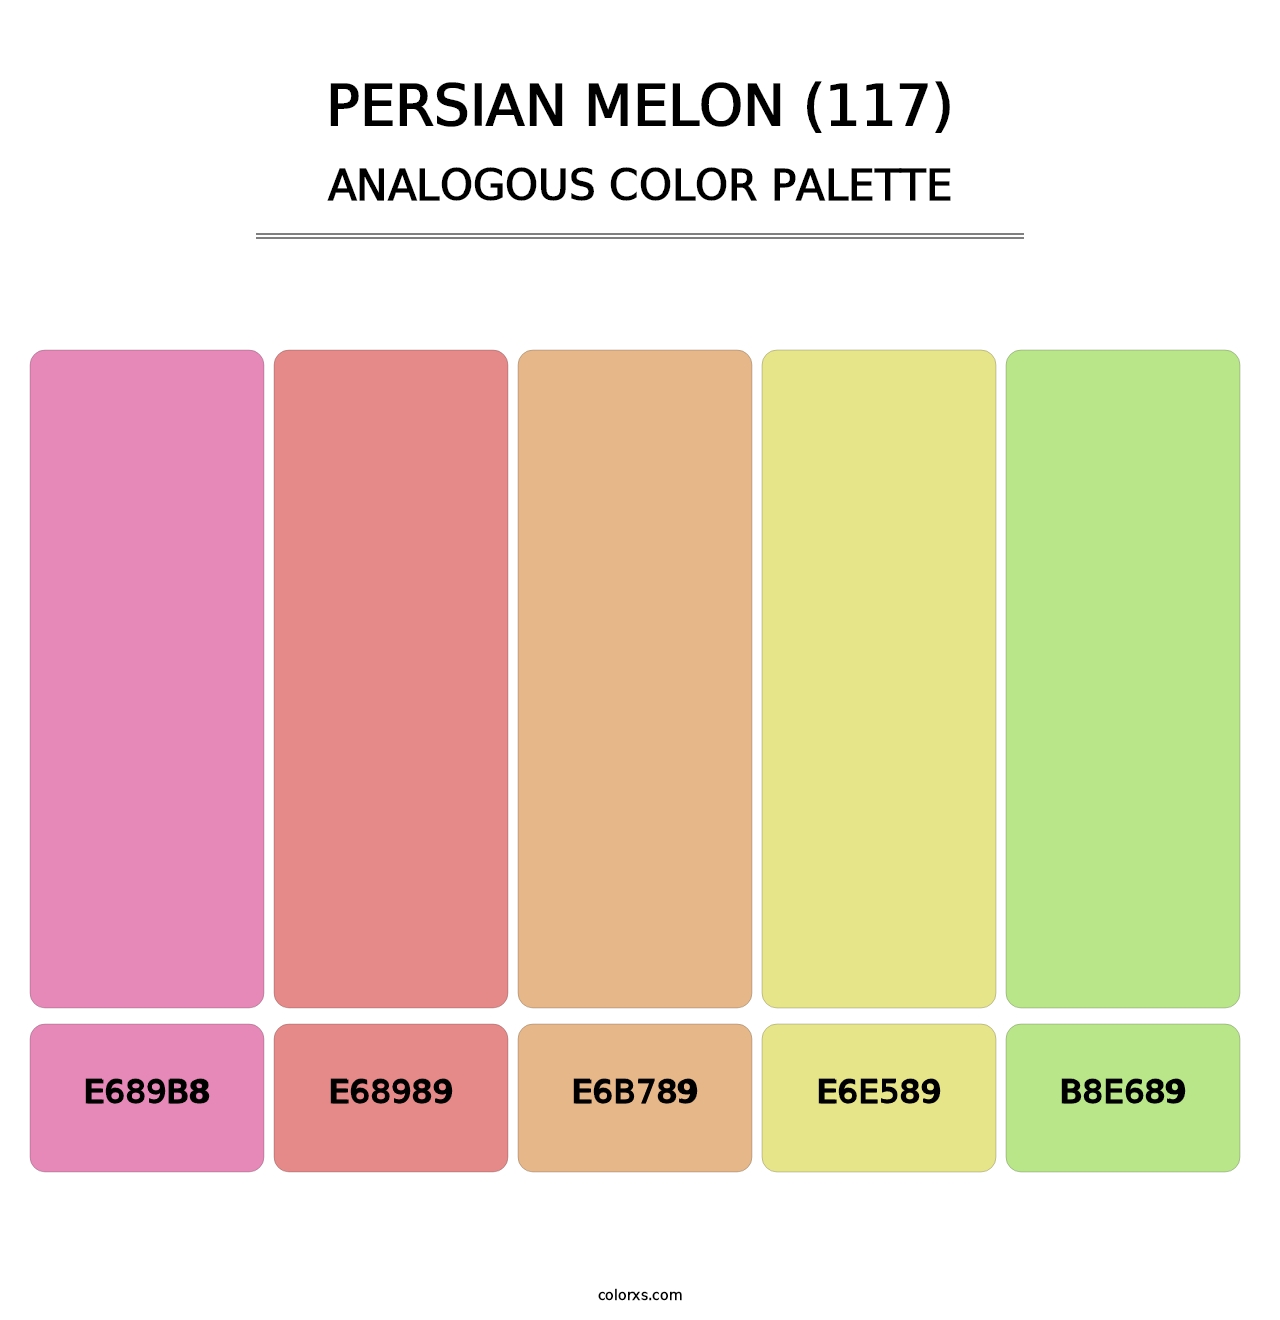 Persian Melon (117) - Analogous Color Palette